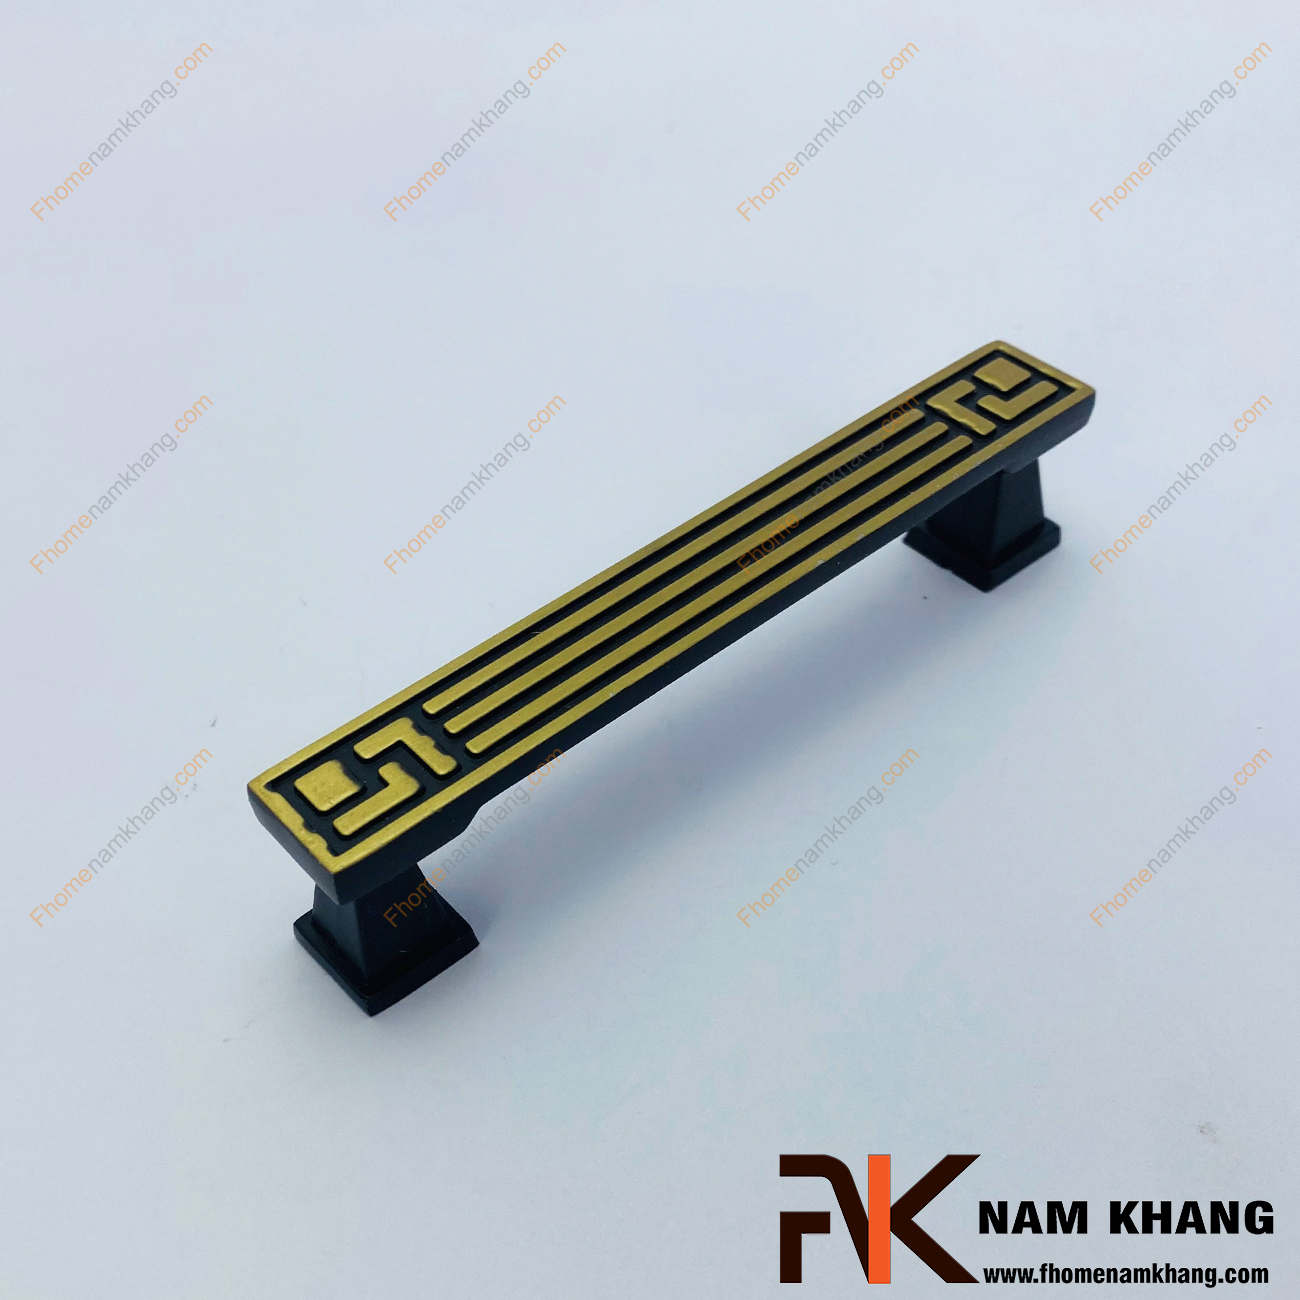 Tay nắm tủ cổ điển màu đen viền vàng NK289-DV có dạng vuông được thiết kế dựa trên hợp kim chất lượng khuôn dạng vuông tạo cảm giác cầm nắm vô cùng chắc chắn và thao tác thực hiện cũng vô cùng dễ dàng.